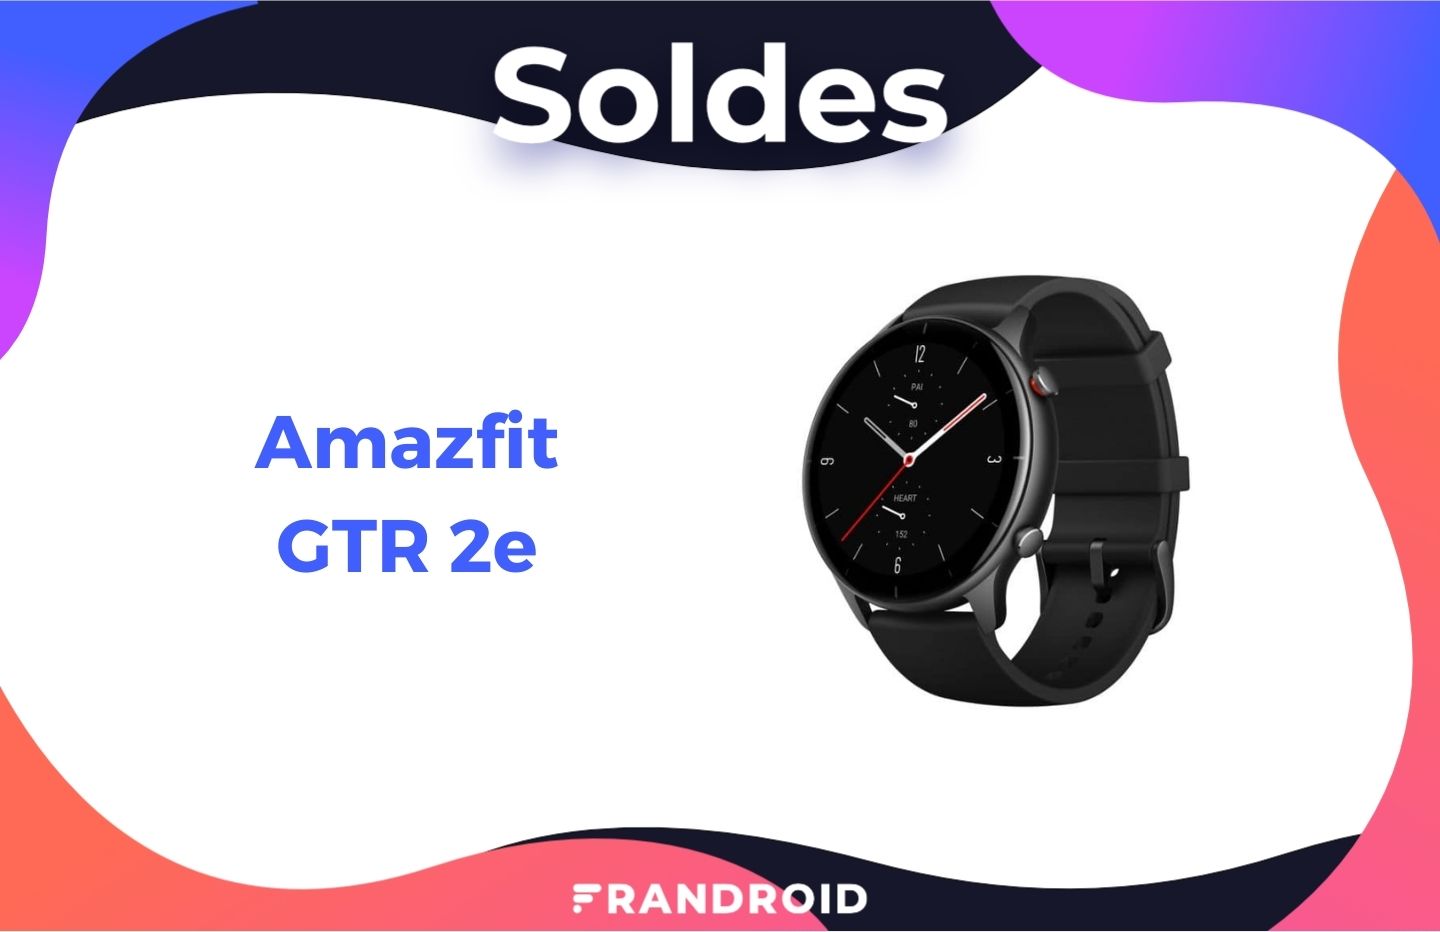 À 79€, la très endurante Amazfit GTR 2e a rarement été aussi bon marché